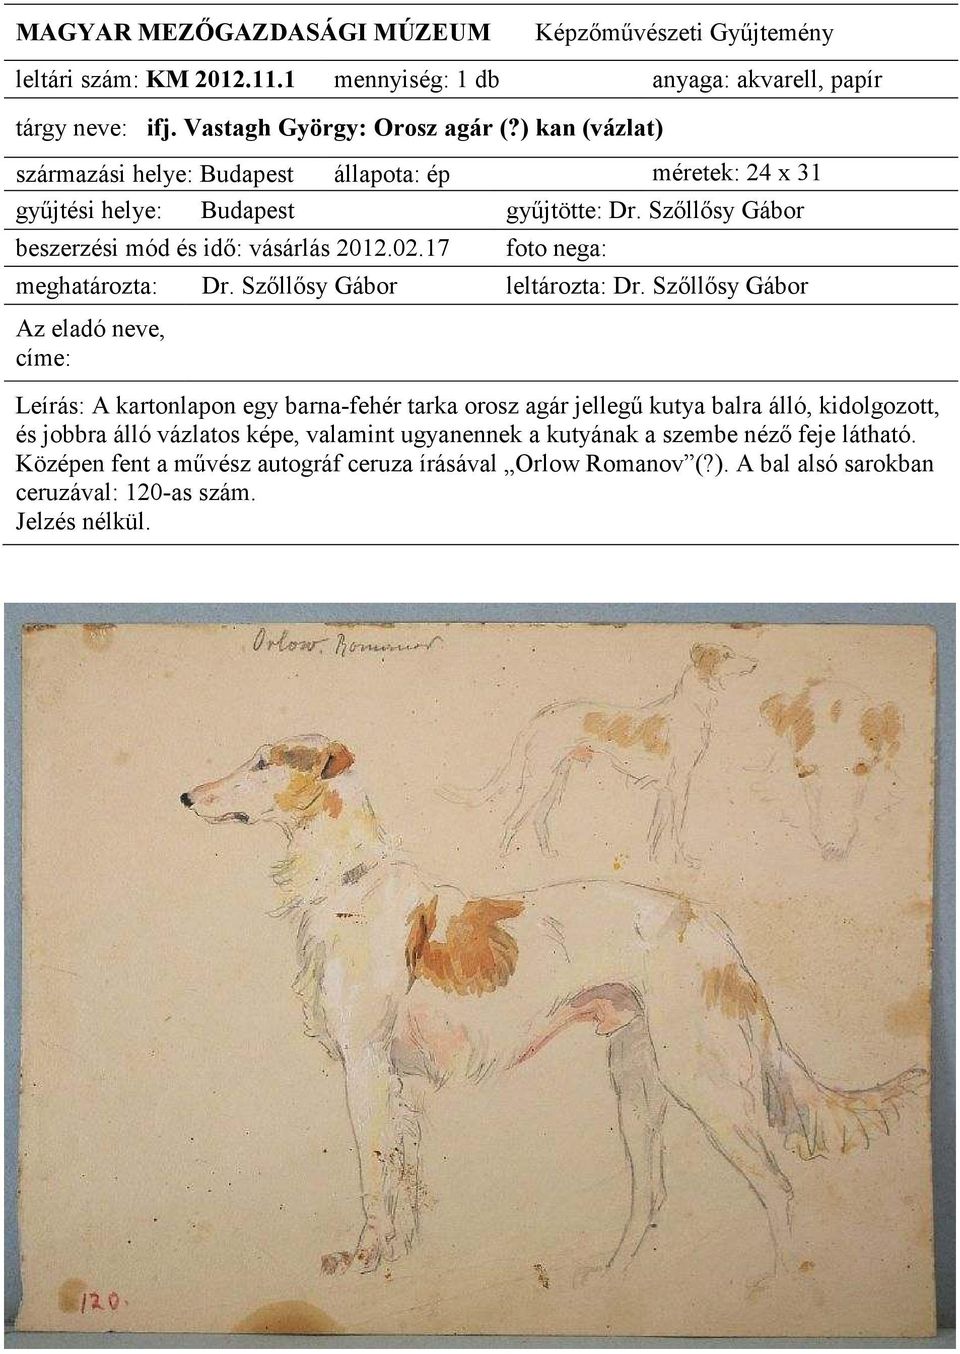 orosz agár jellegő kutya balra álló, kidolgozott, és jobbra álló vázlatos képe, valamint ugyanennek a kutyának a szembe